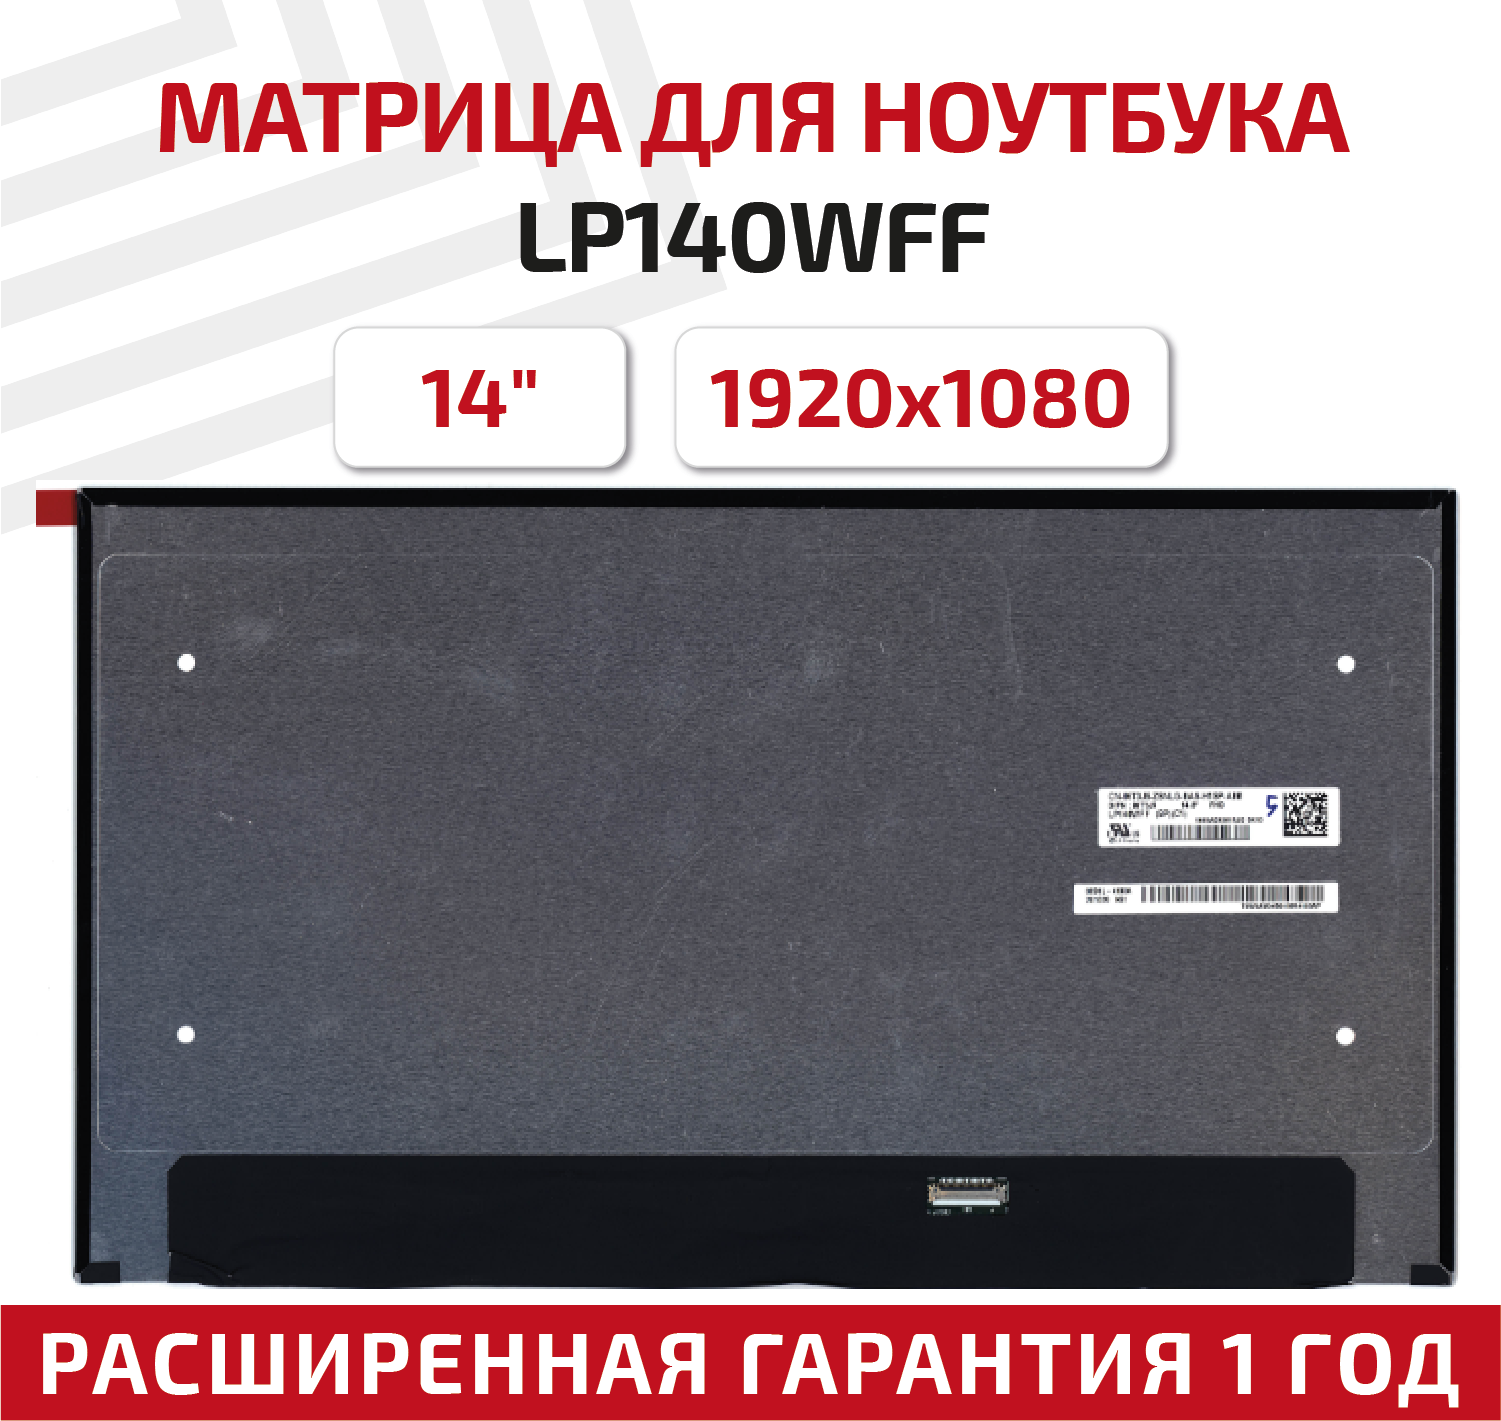 Матрица (экран) для ноутбука LP140WFF(SP)(C1), 14", 1920x1080, 30-pin, eDp, UltraSlim, светодиодная (LED), глянцевая